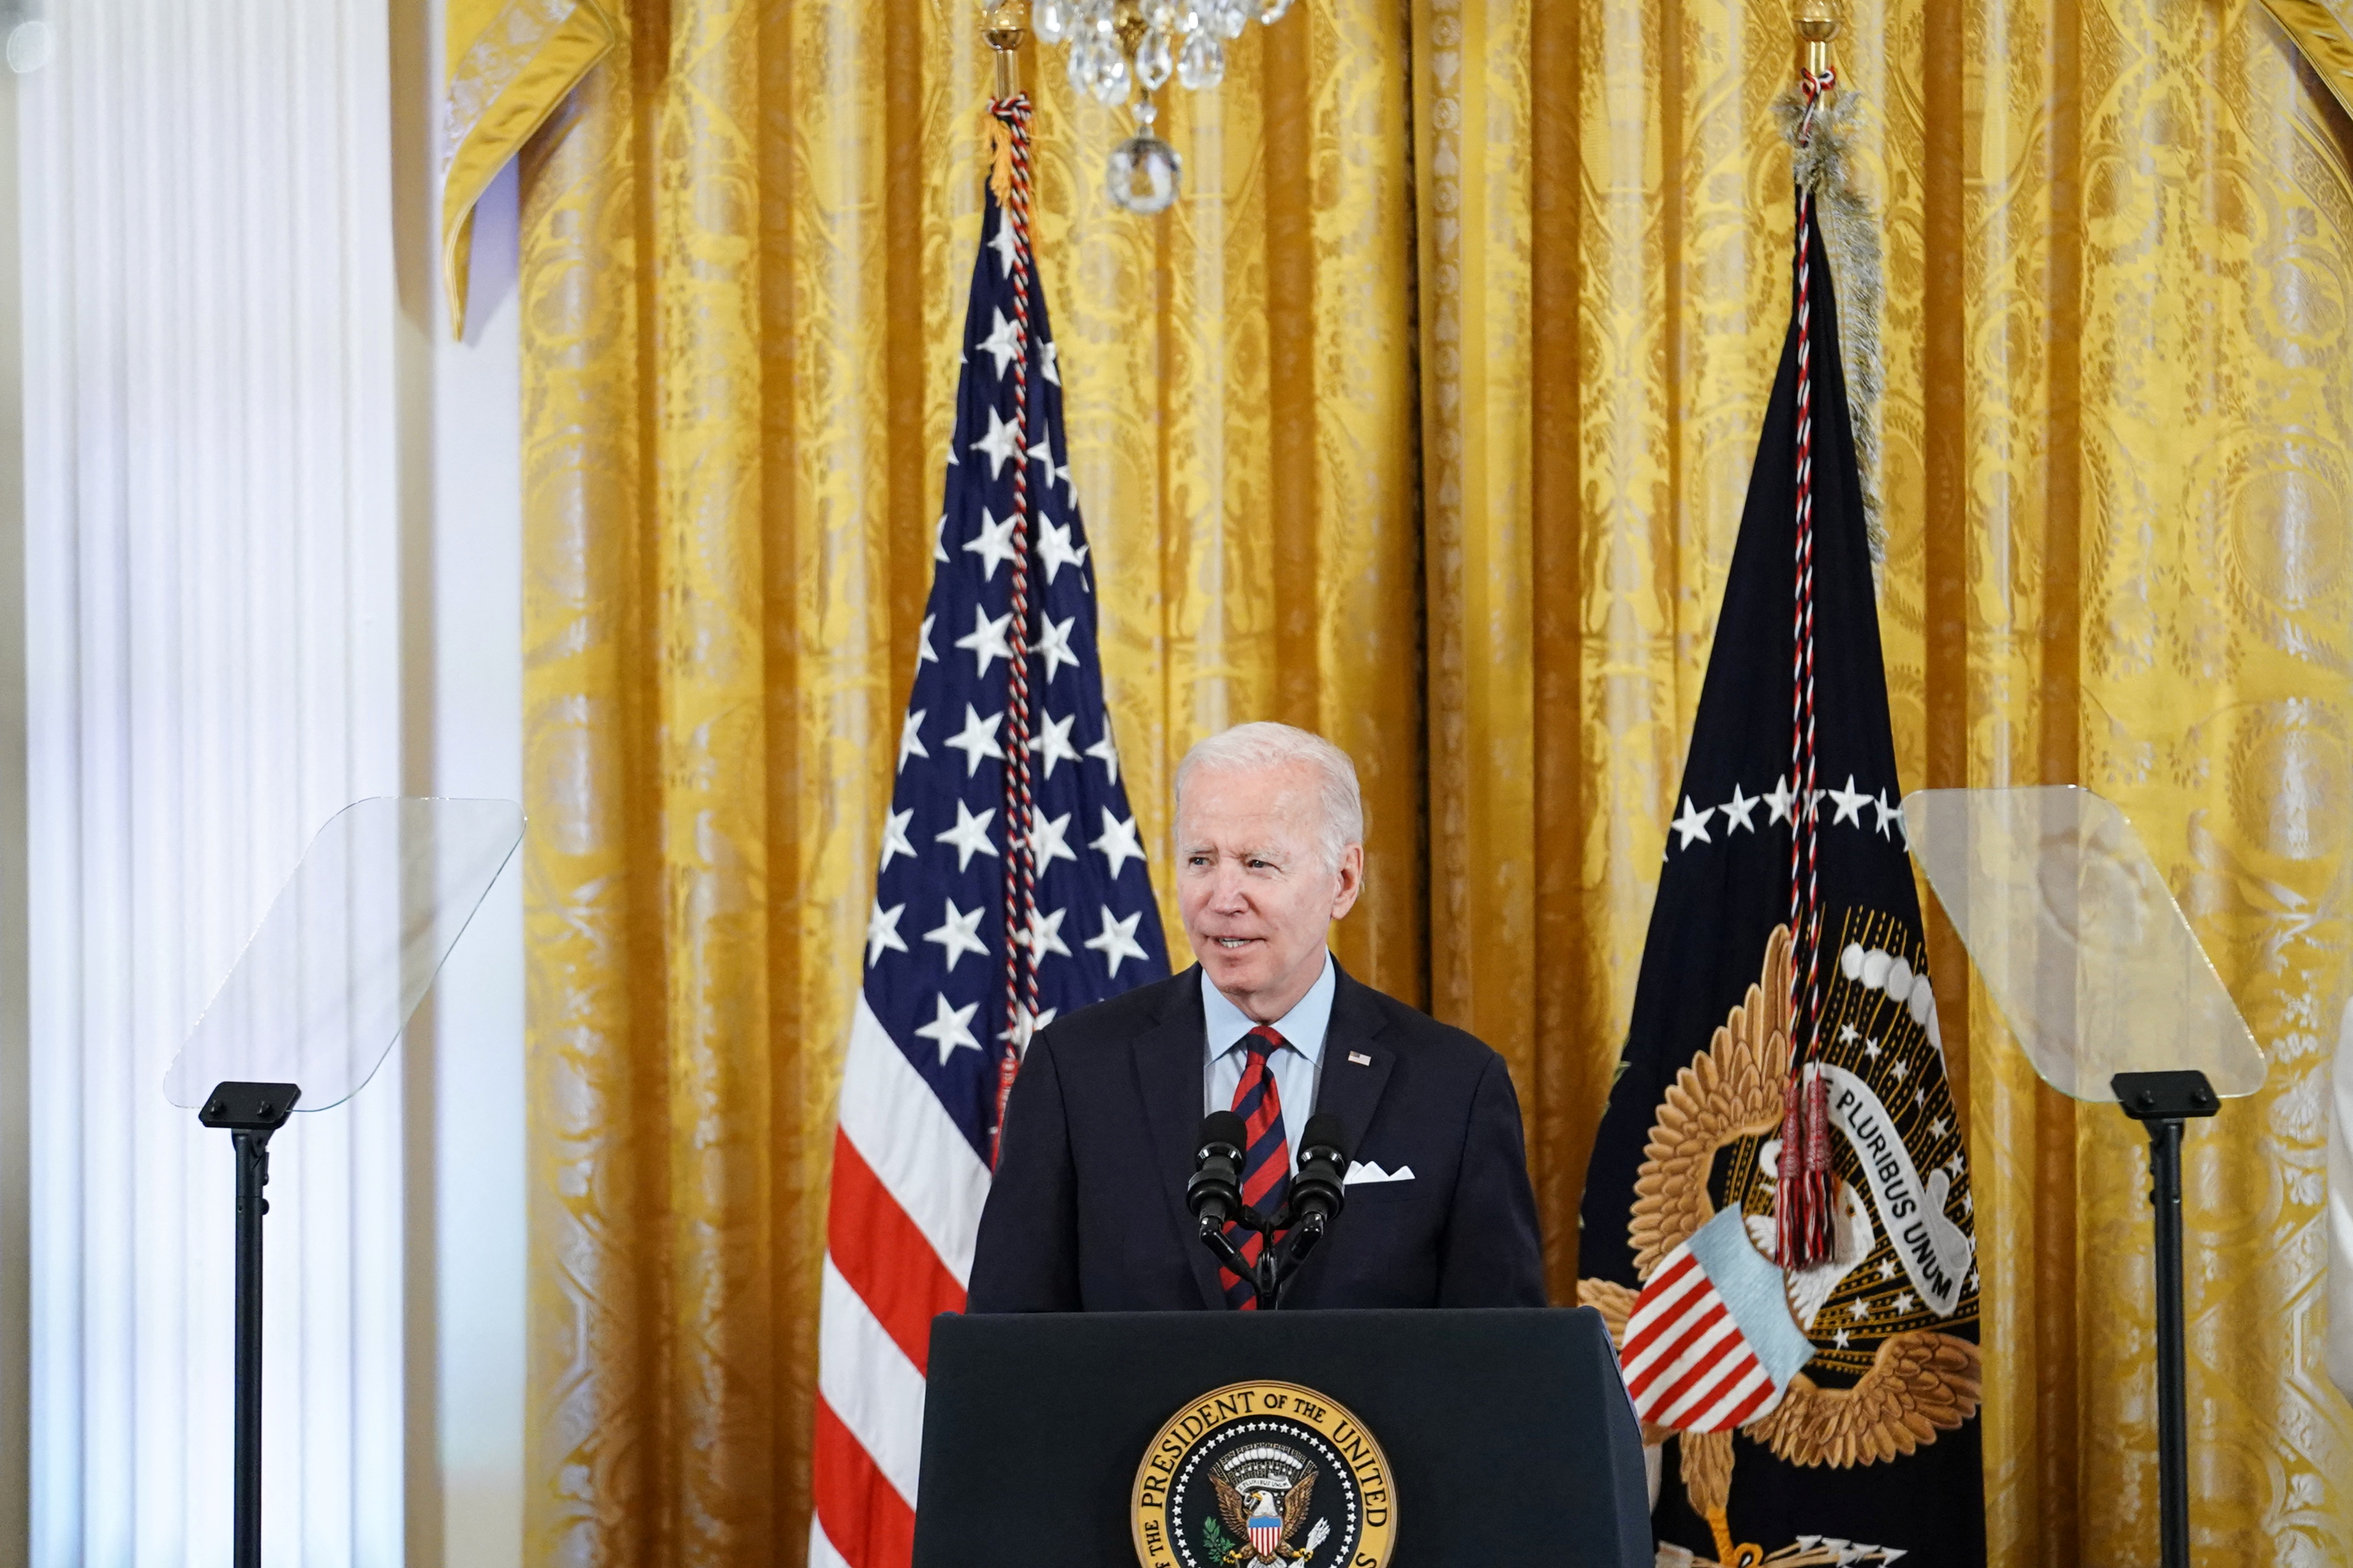 El mandatario estadounidense Joe Biden reafirmó este miércoles su compromiso de que "EEUU permanecerá junto a Ucrania" en la defensa de su democracia, soberanía e integridad territorial "frente a la agresión rusa injustificada" (REUTERS/Sarah Silbiger/Archivo)